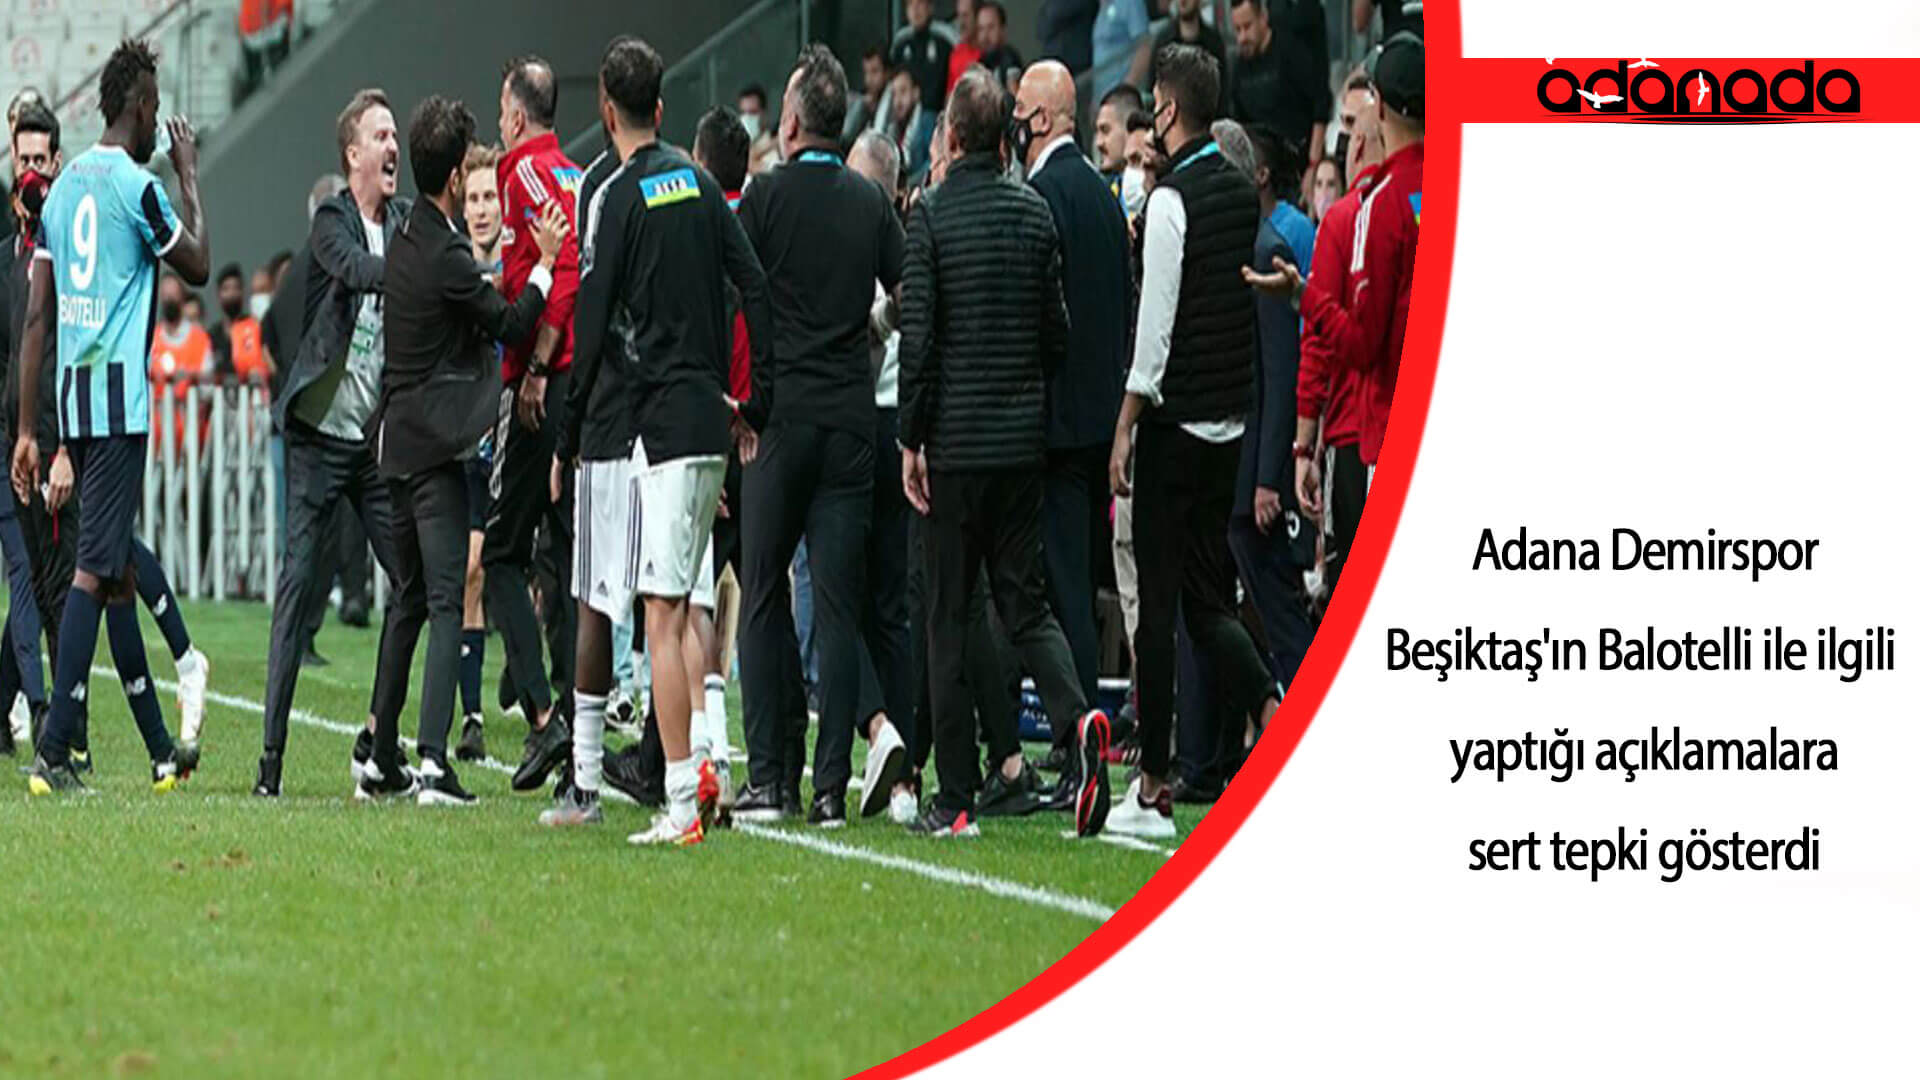 Adana Demirspor, Beşiktaş’ın Balotelli ile ilgili yaptığı açıklamalara sert tepki gösterdi